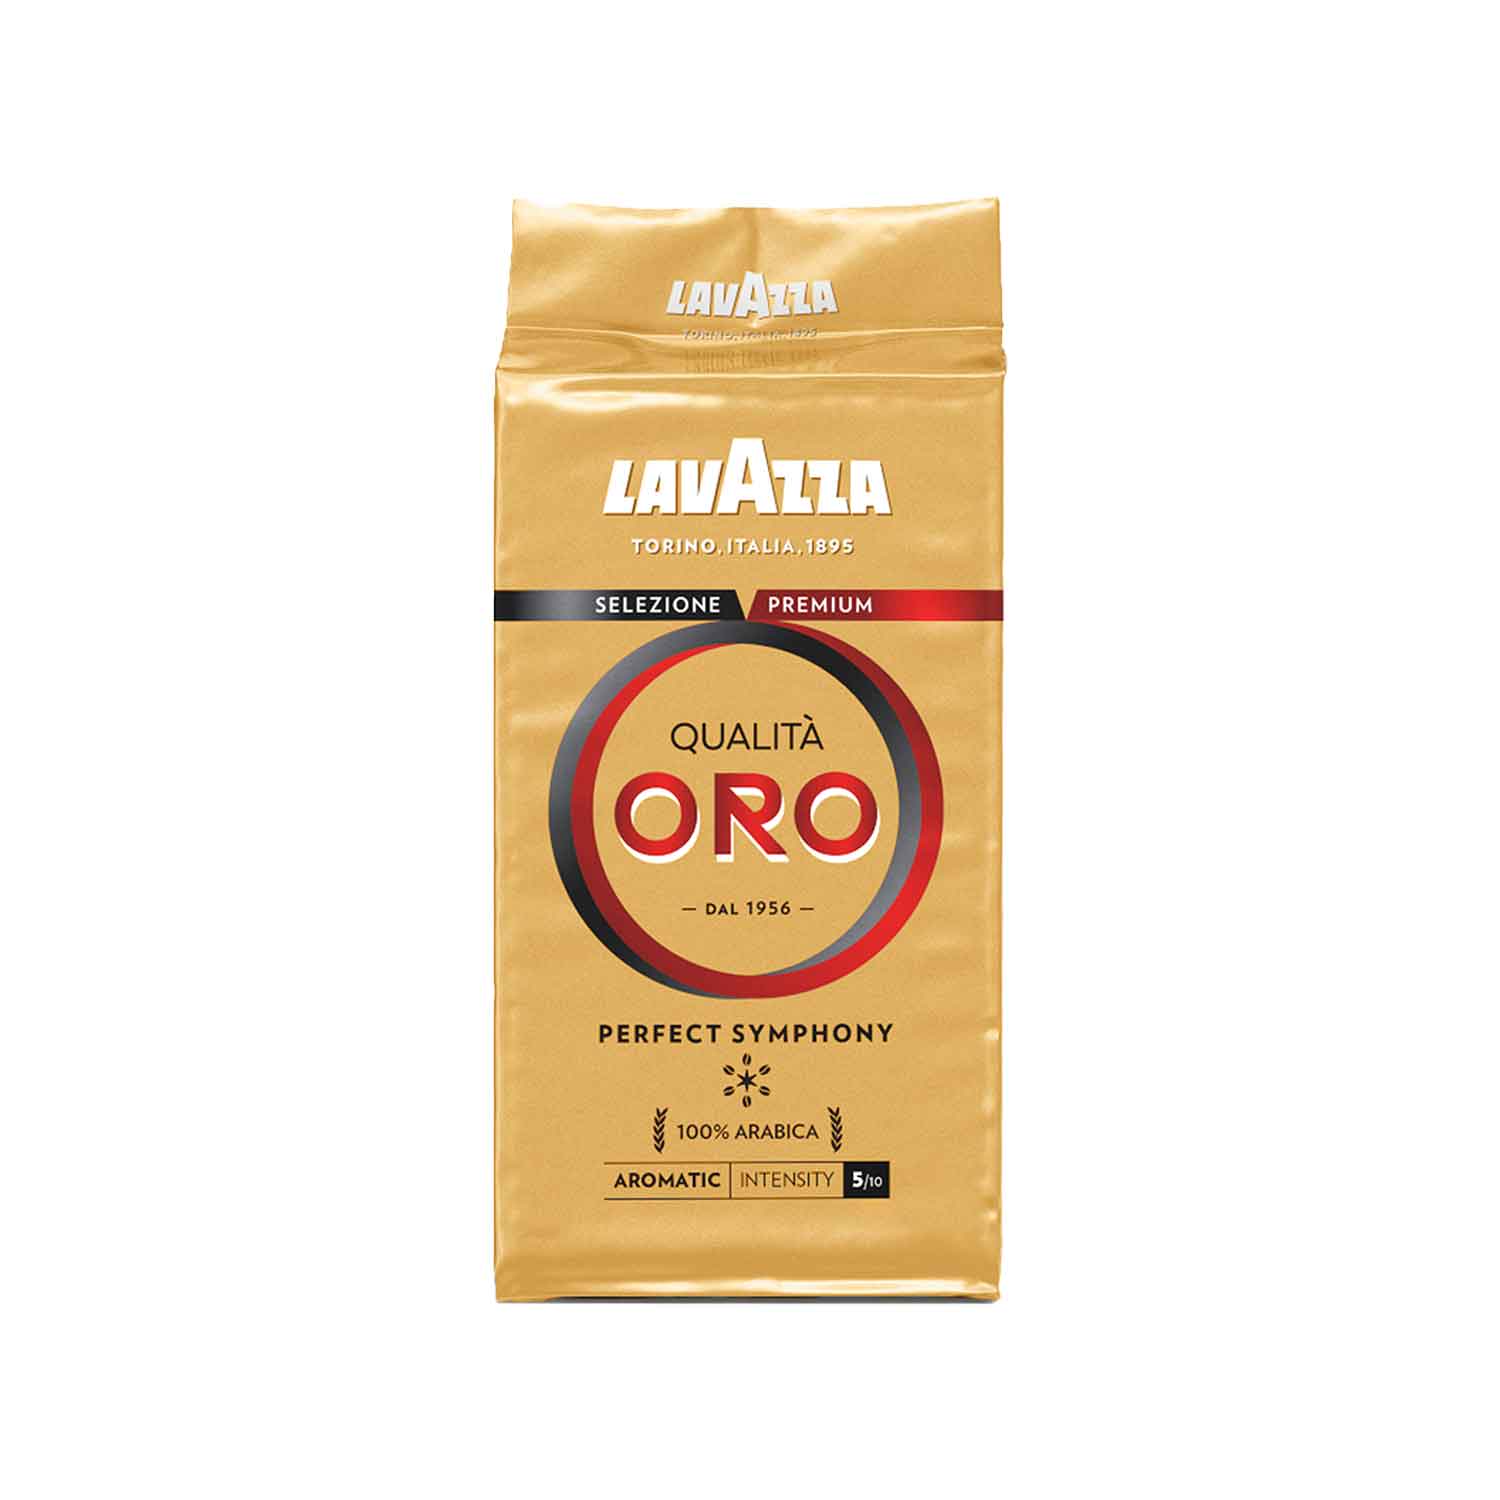 Lavazza - Qualità Oro - 250g (Pack of 4)